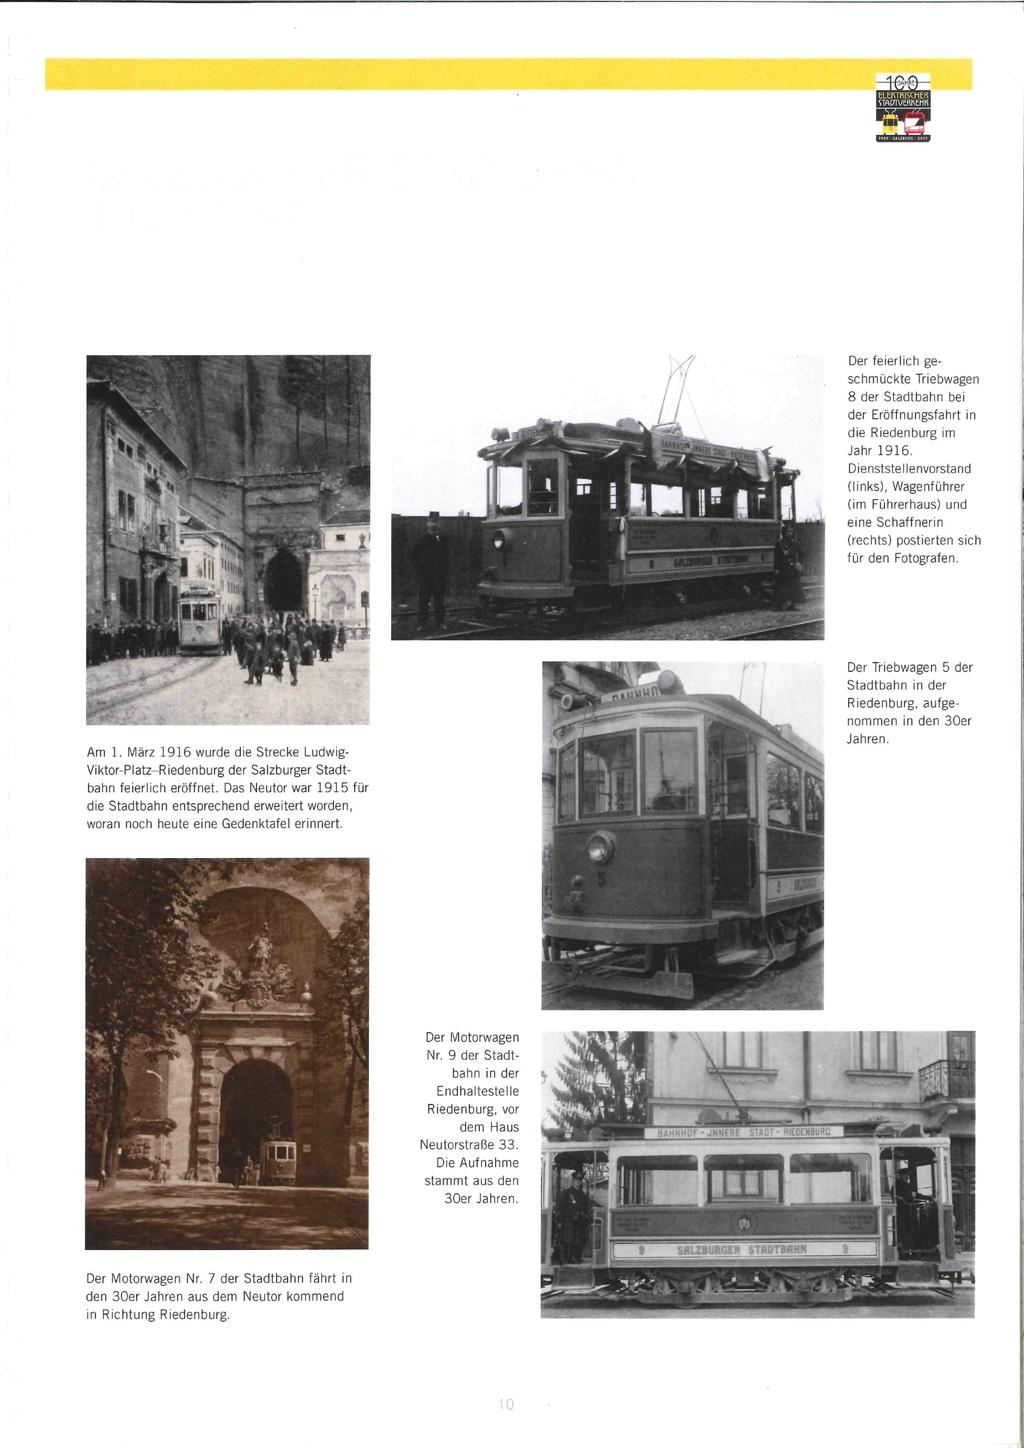 Der feierlich geschmückte Triebwagen 8 der Stadtbahn bei der Eröffnungsfahrt in die Riedenburg im Jahr 1916.